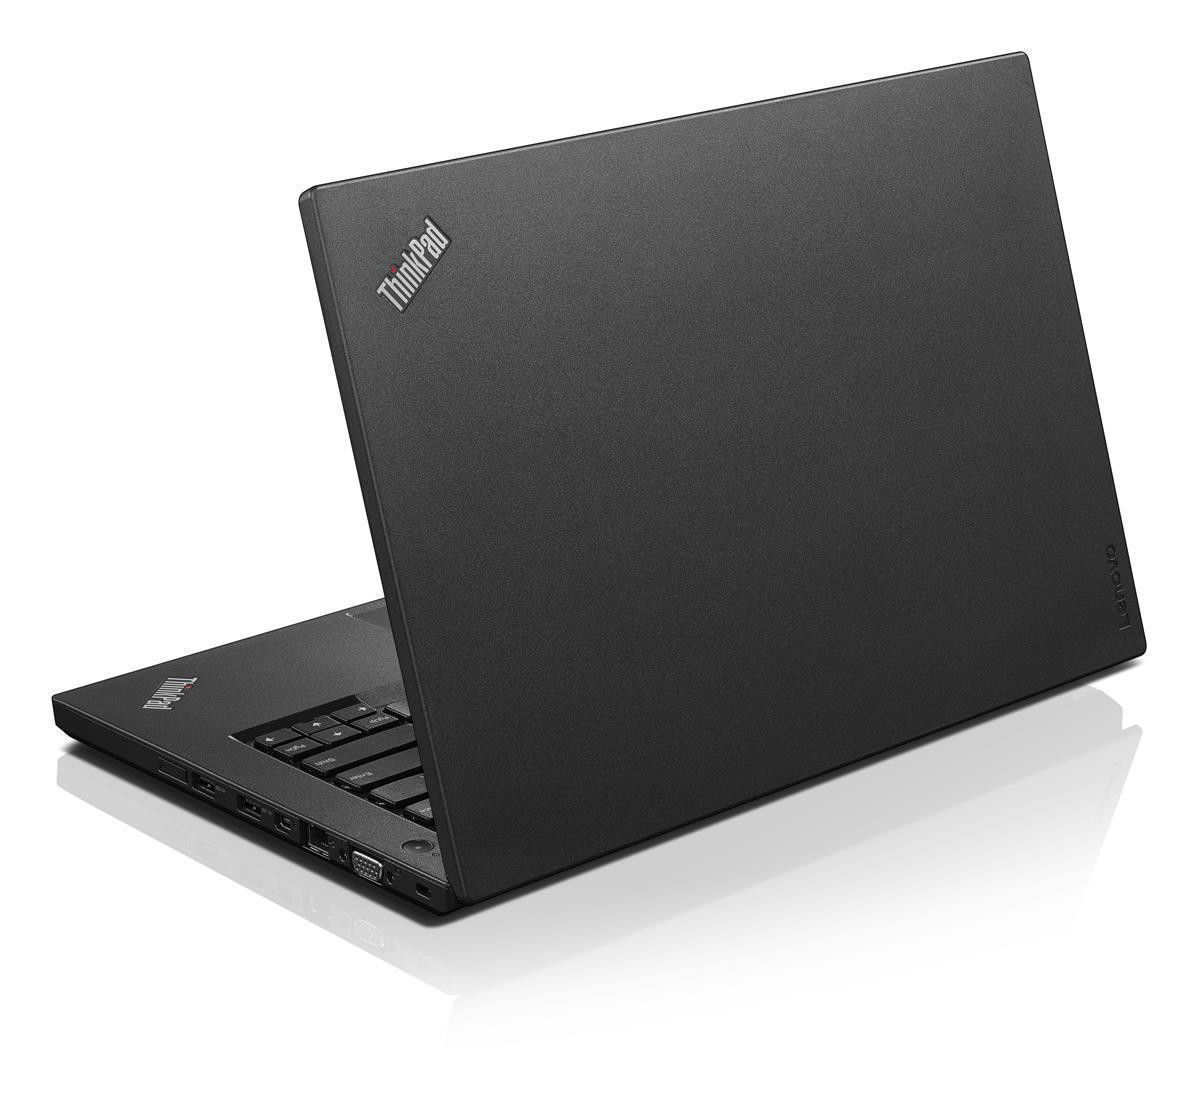 LENOVO ThinkPad L460 Intel Core i5-6200U 8GB RAM 128GB SSD Full HD-Display W10P